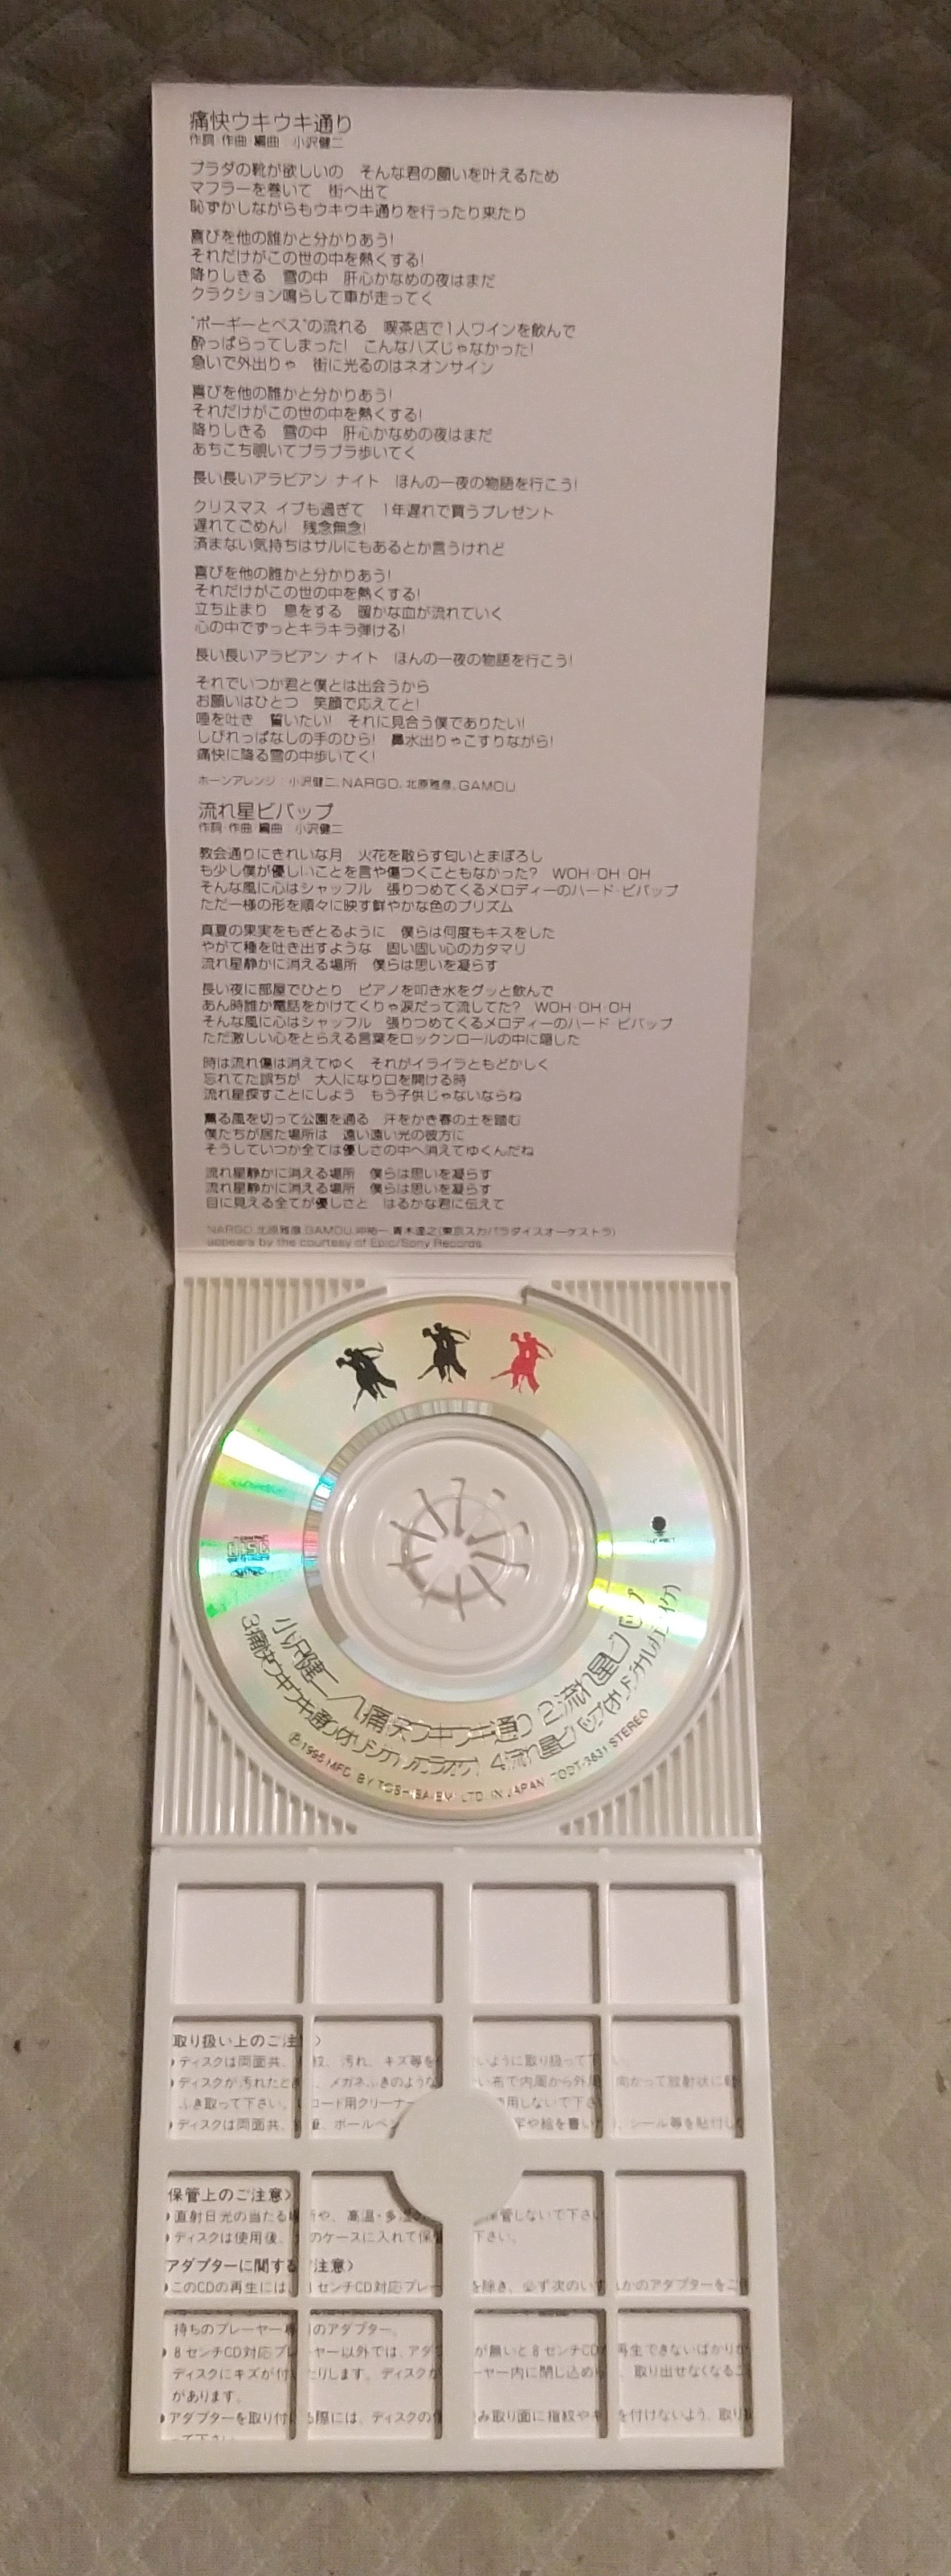 小沢健二(小澤健二) - 痛快ウキウキ通り日版二手單曲CD | Yahoo奇摩拍賣